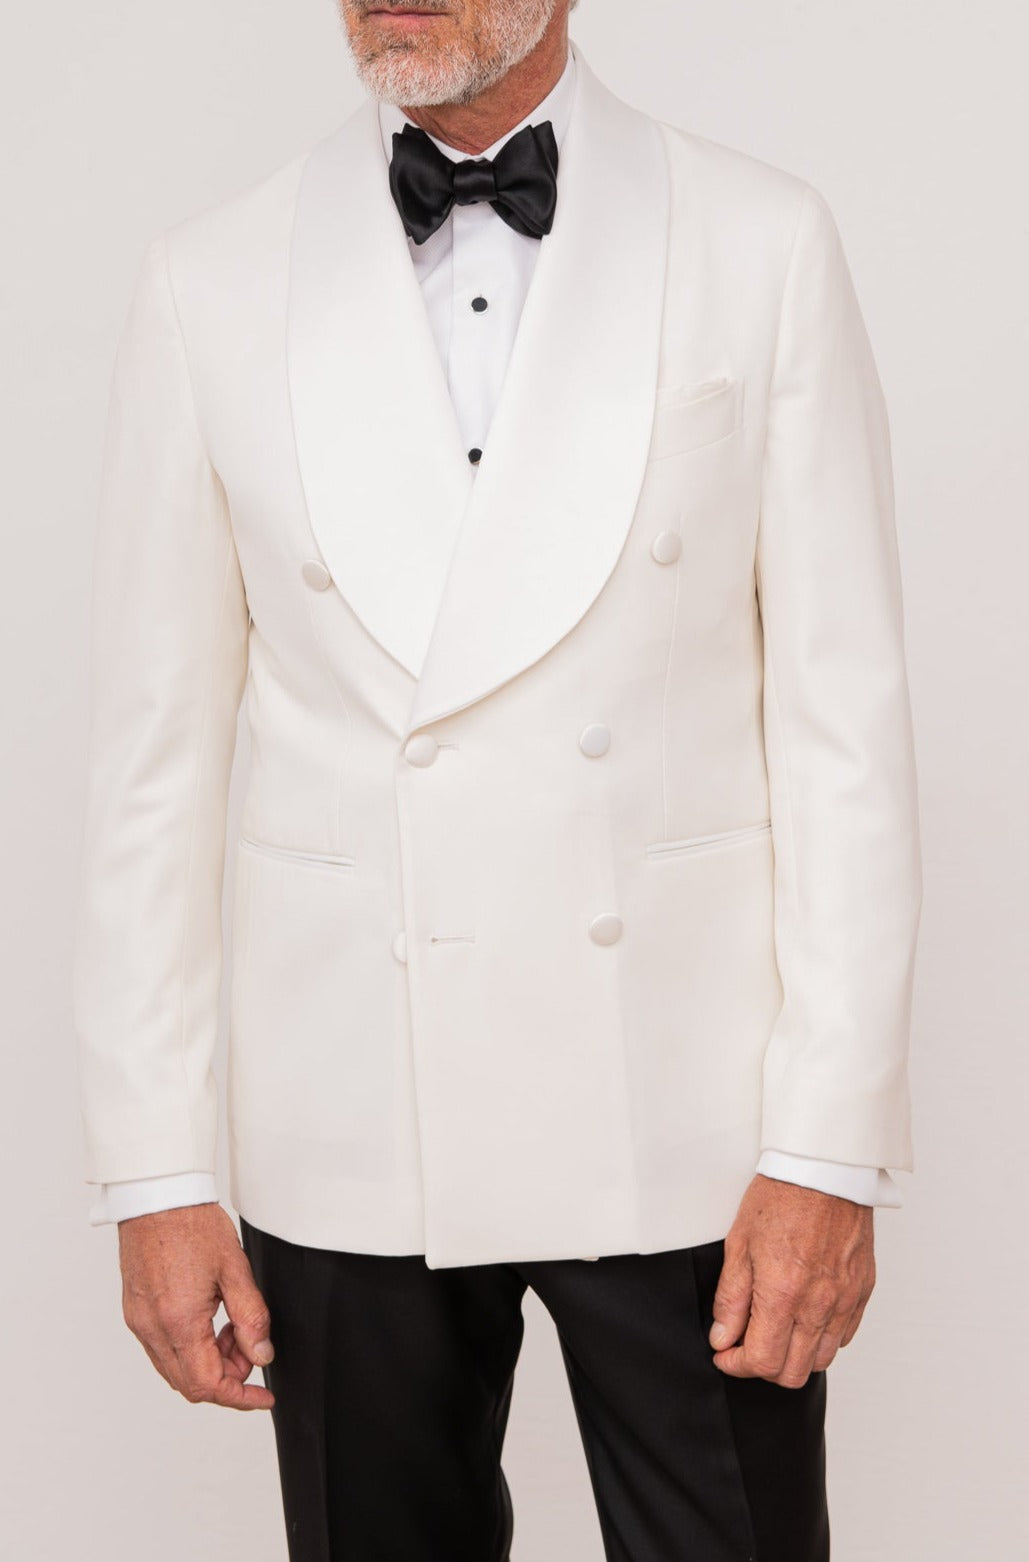 Details 237+ white tuxedo suit best